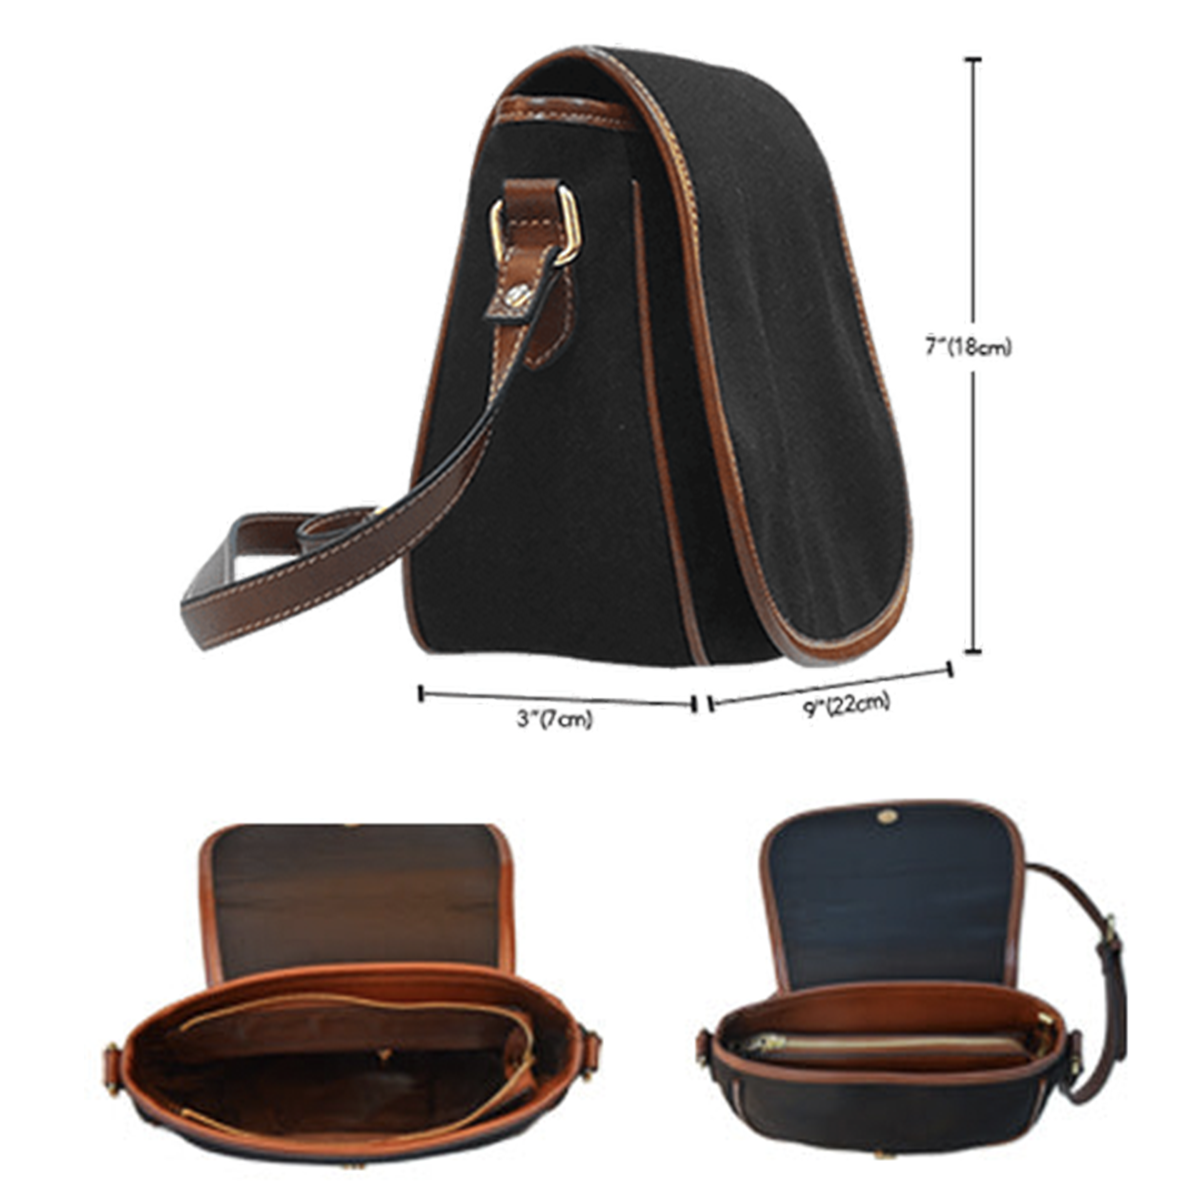 MacFarlane Modern Tartan Saddle Handbags